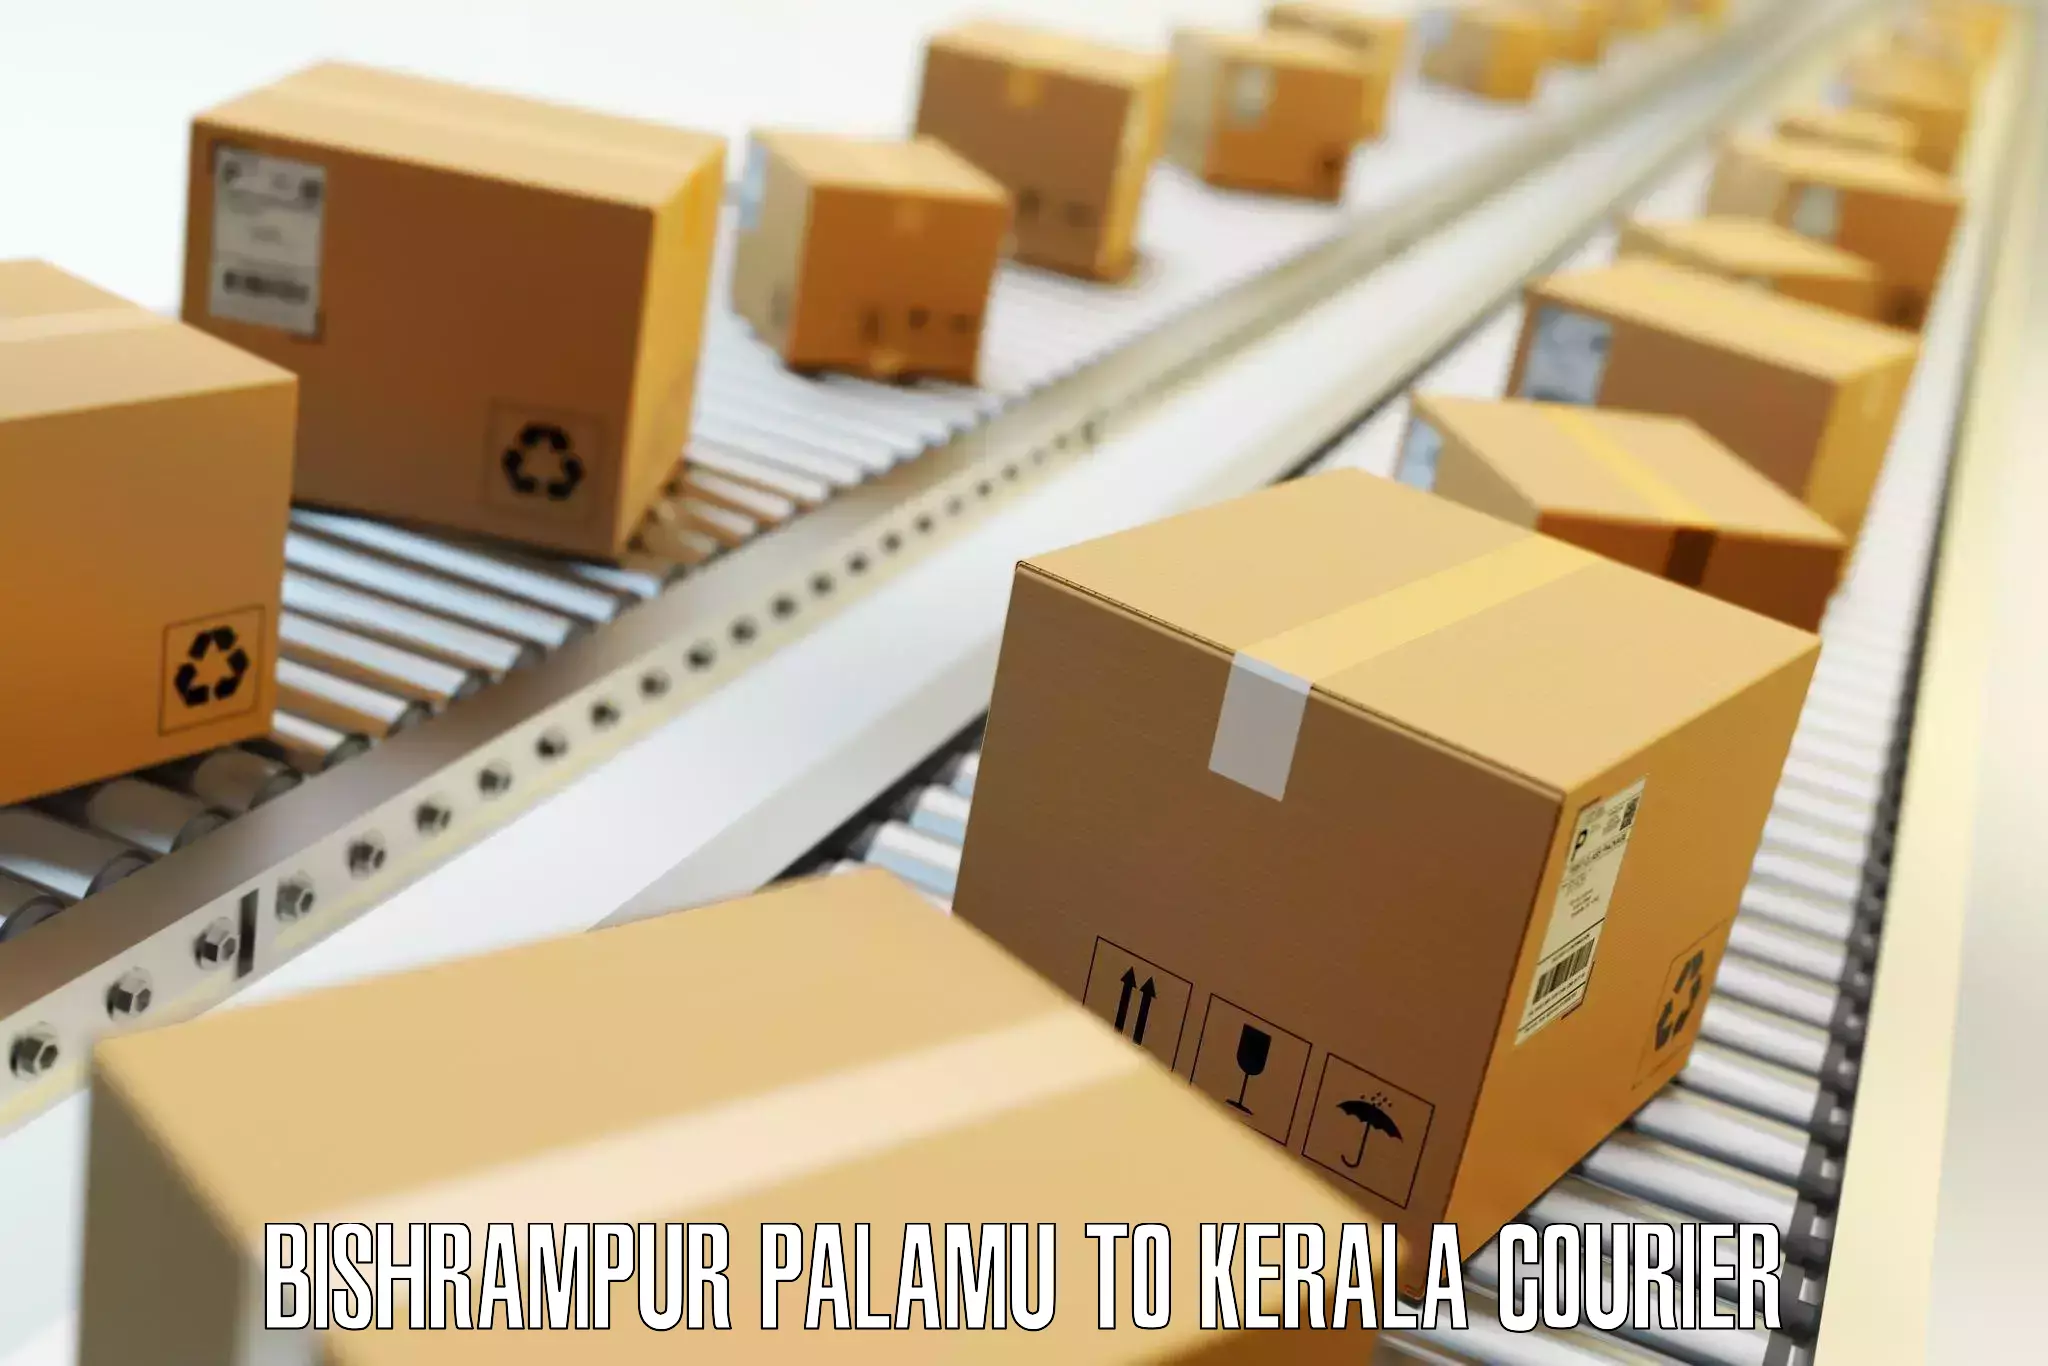 Luggage forwarding service Bishrampur Palamu to Kerala